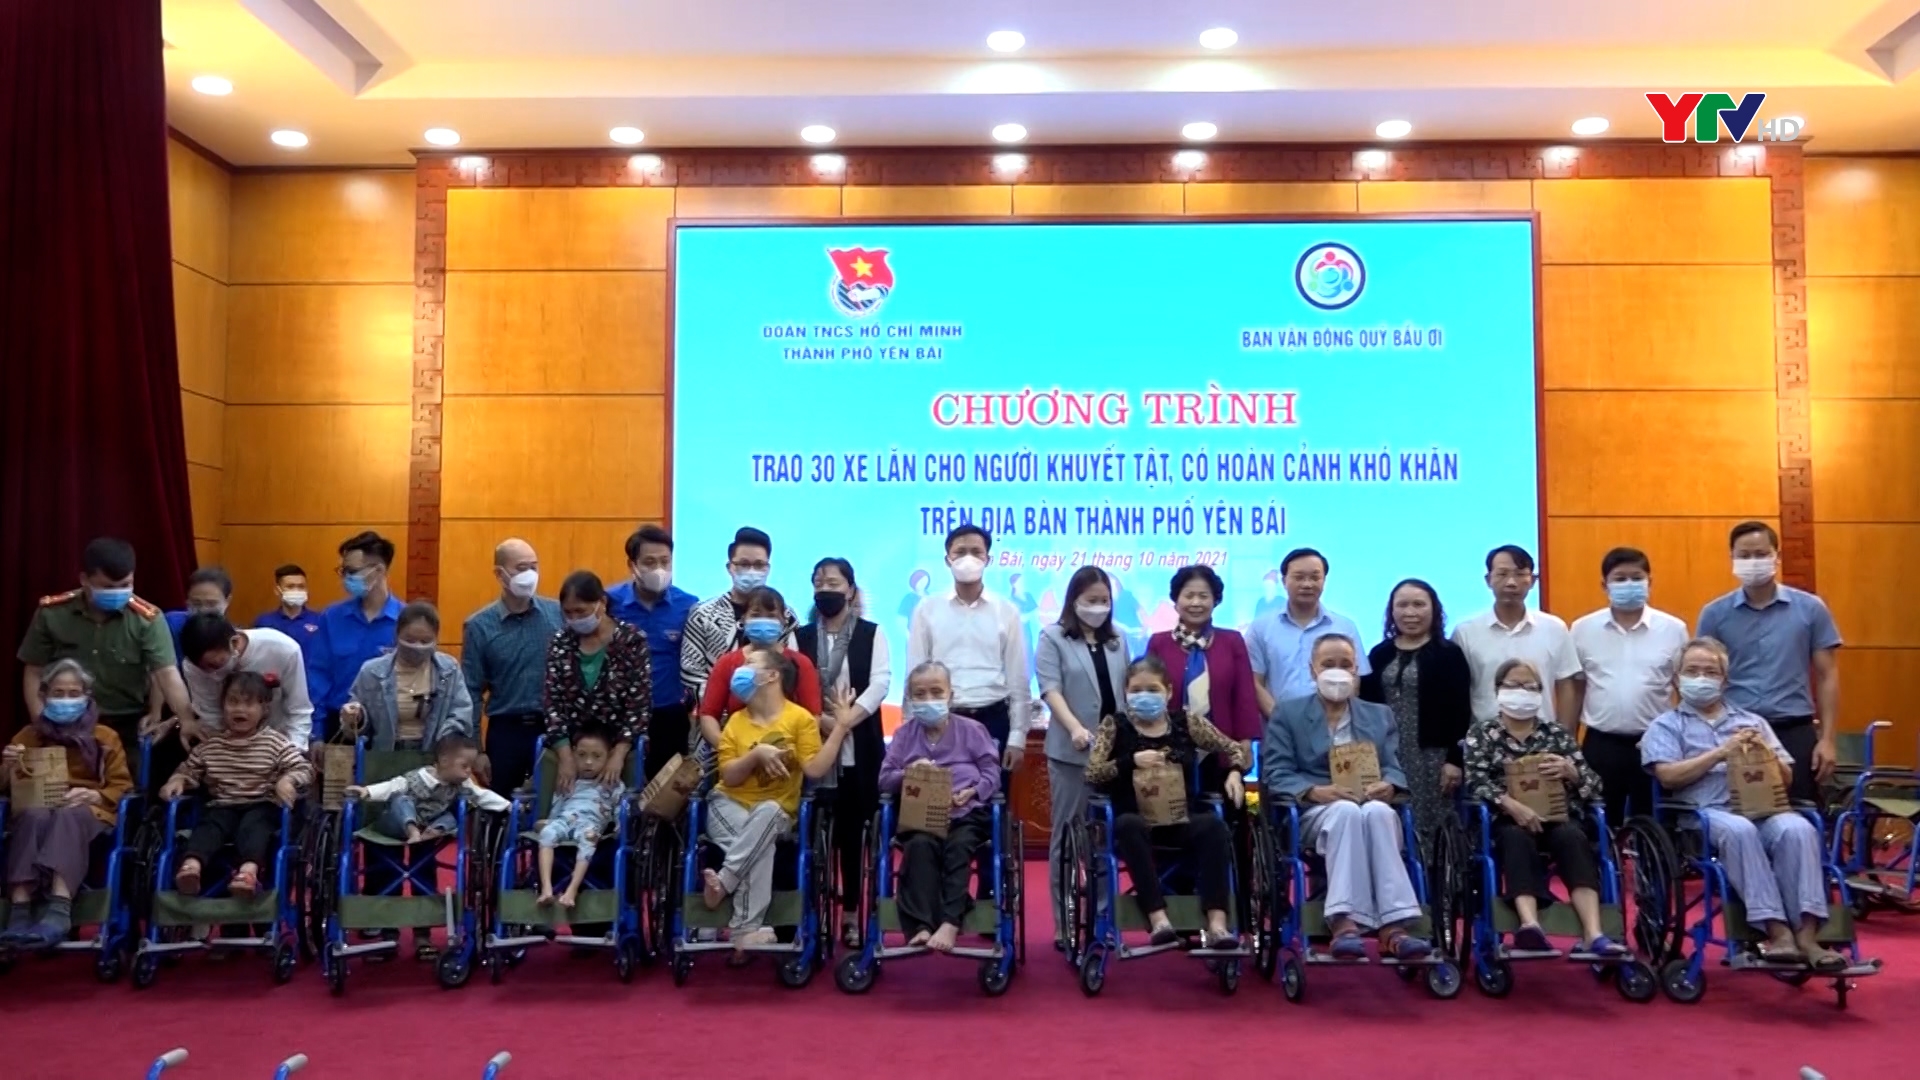 Trao 30 xe lăn cho người khuyết tật có hoàn cảnh khó khăn trên địa bàn thành phố Yên Bái